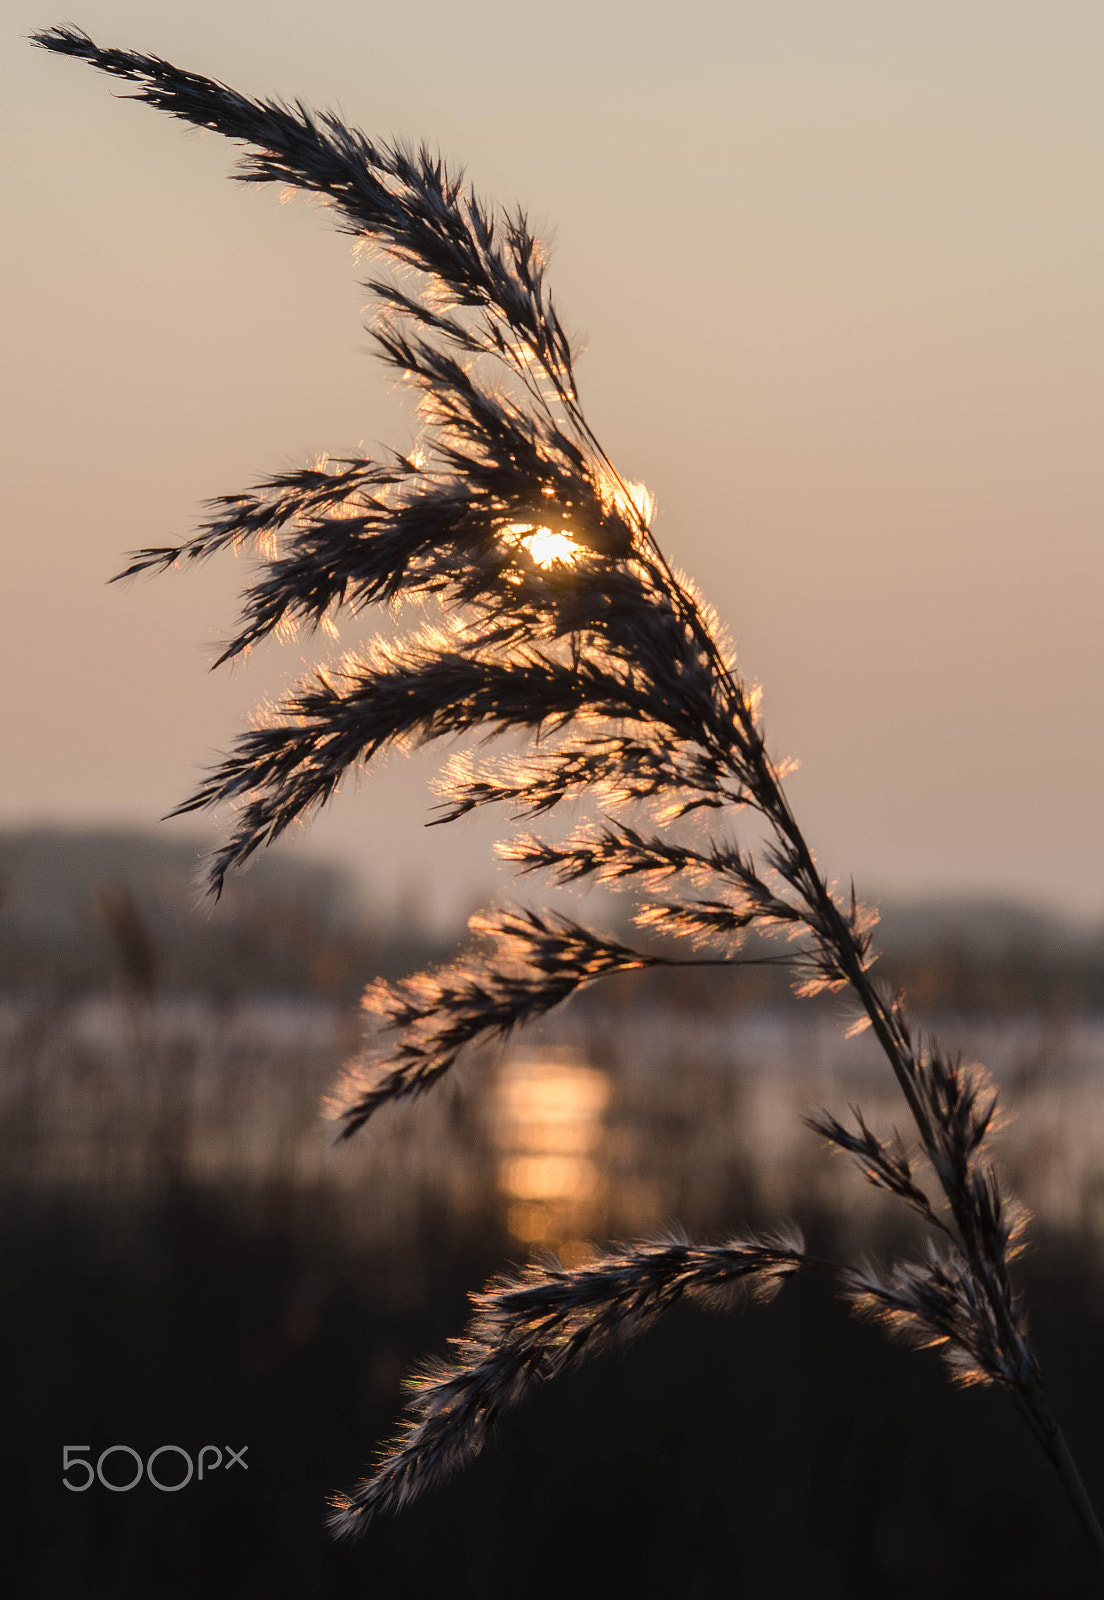 AF Nikkor 70-210mm f/4-5.6 sample photo. Swaying reeds at sunrise photography